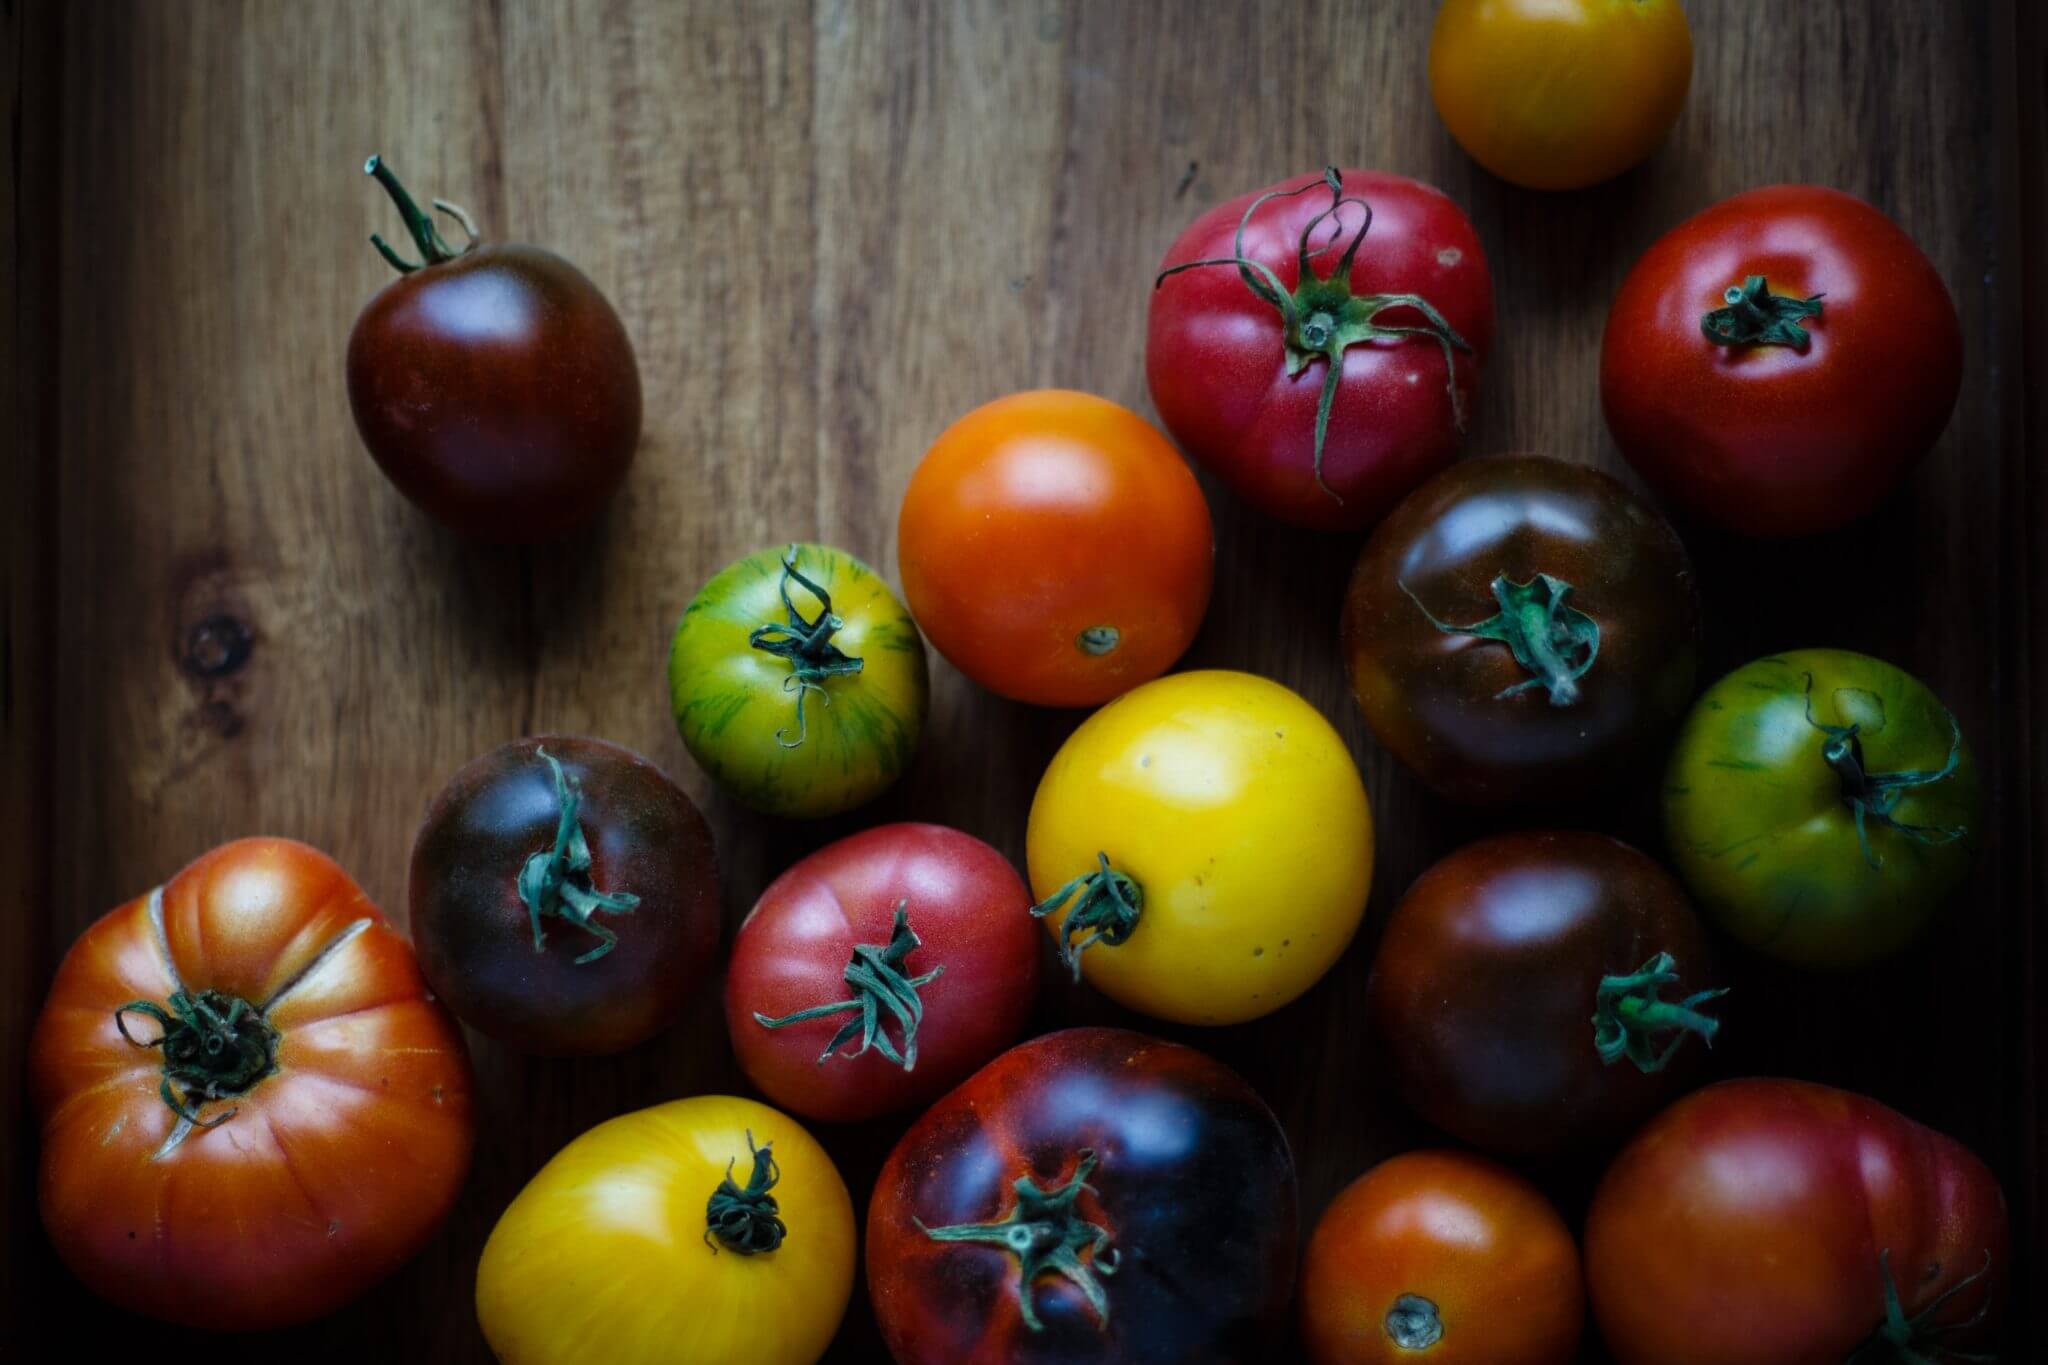 Tomates que saben a tomate: los mercados ecológicos nos traen el verdadero sabor de la huerta